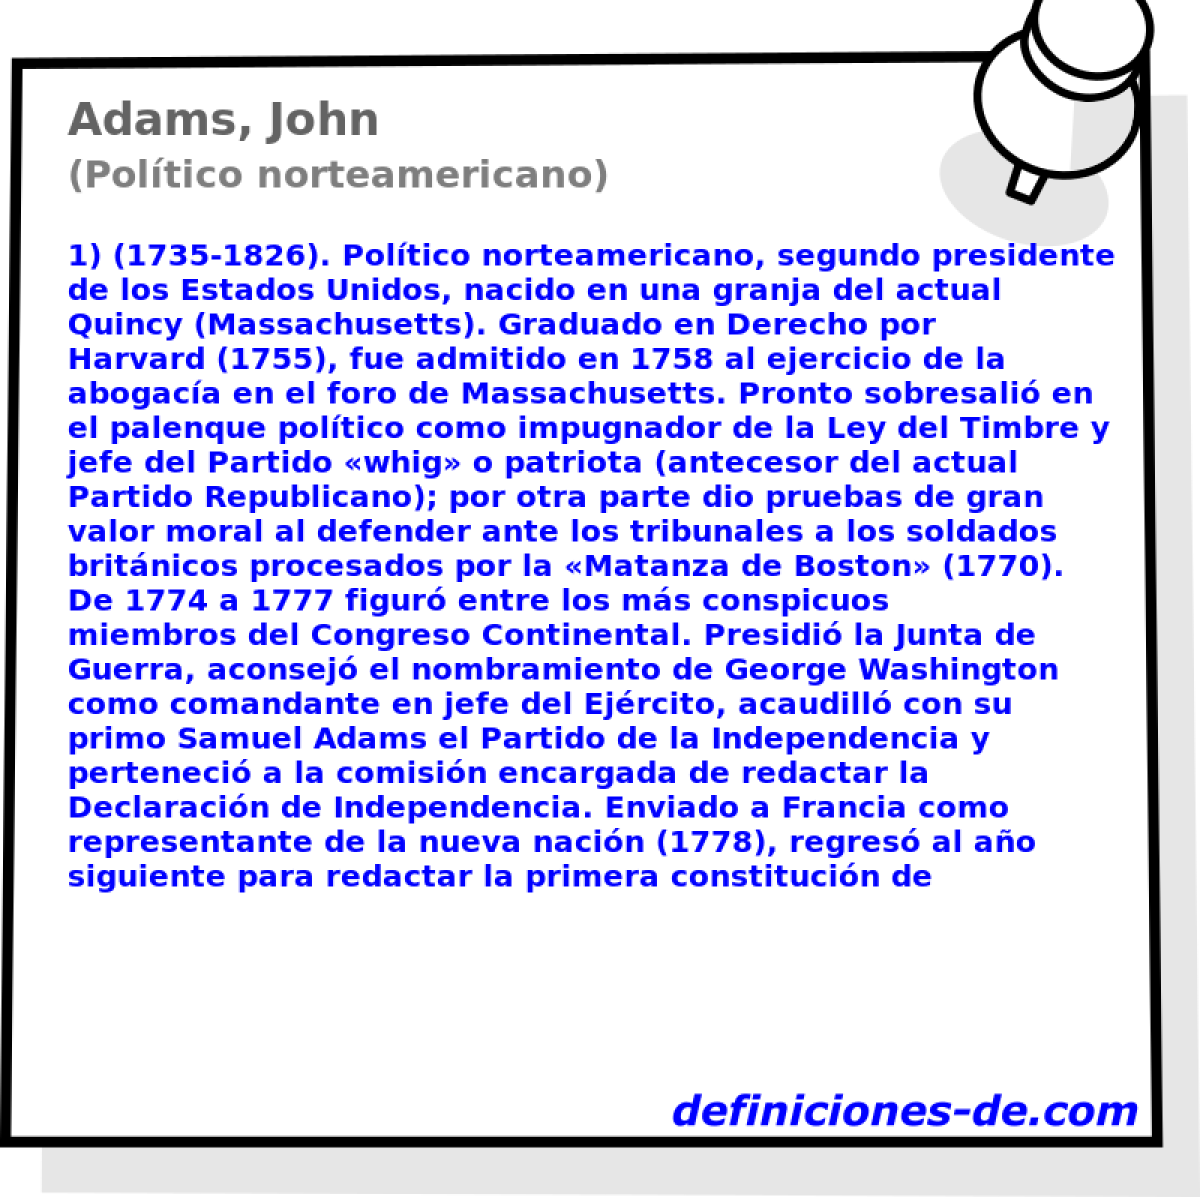 Adams, John (Poltico norteamericano)